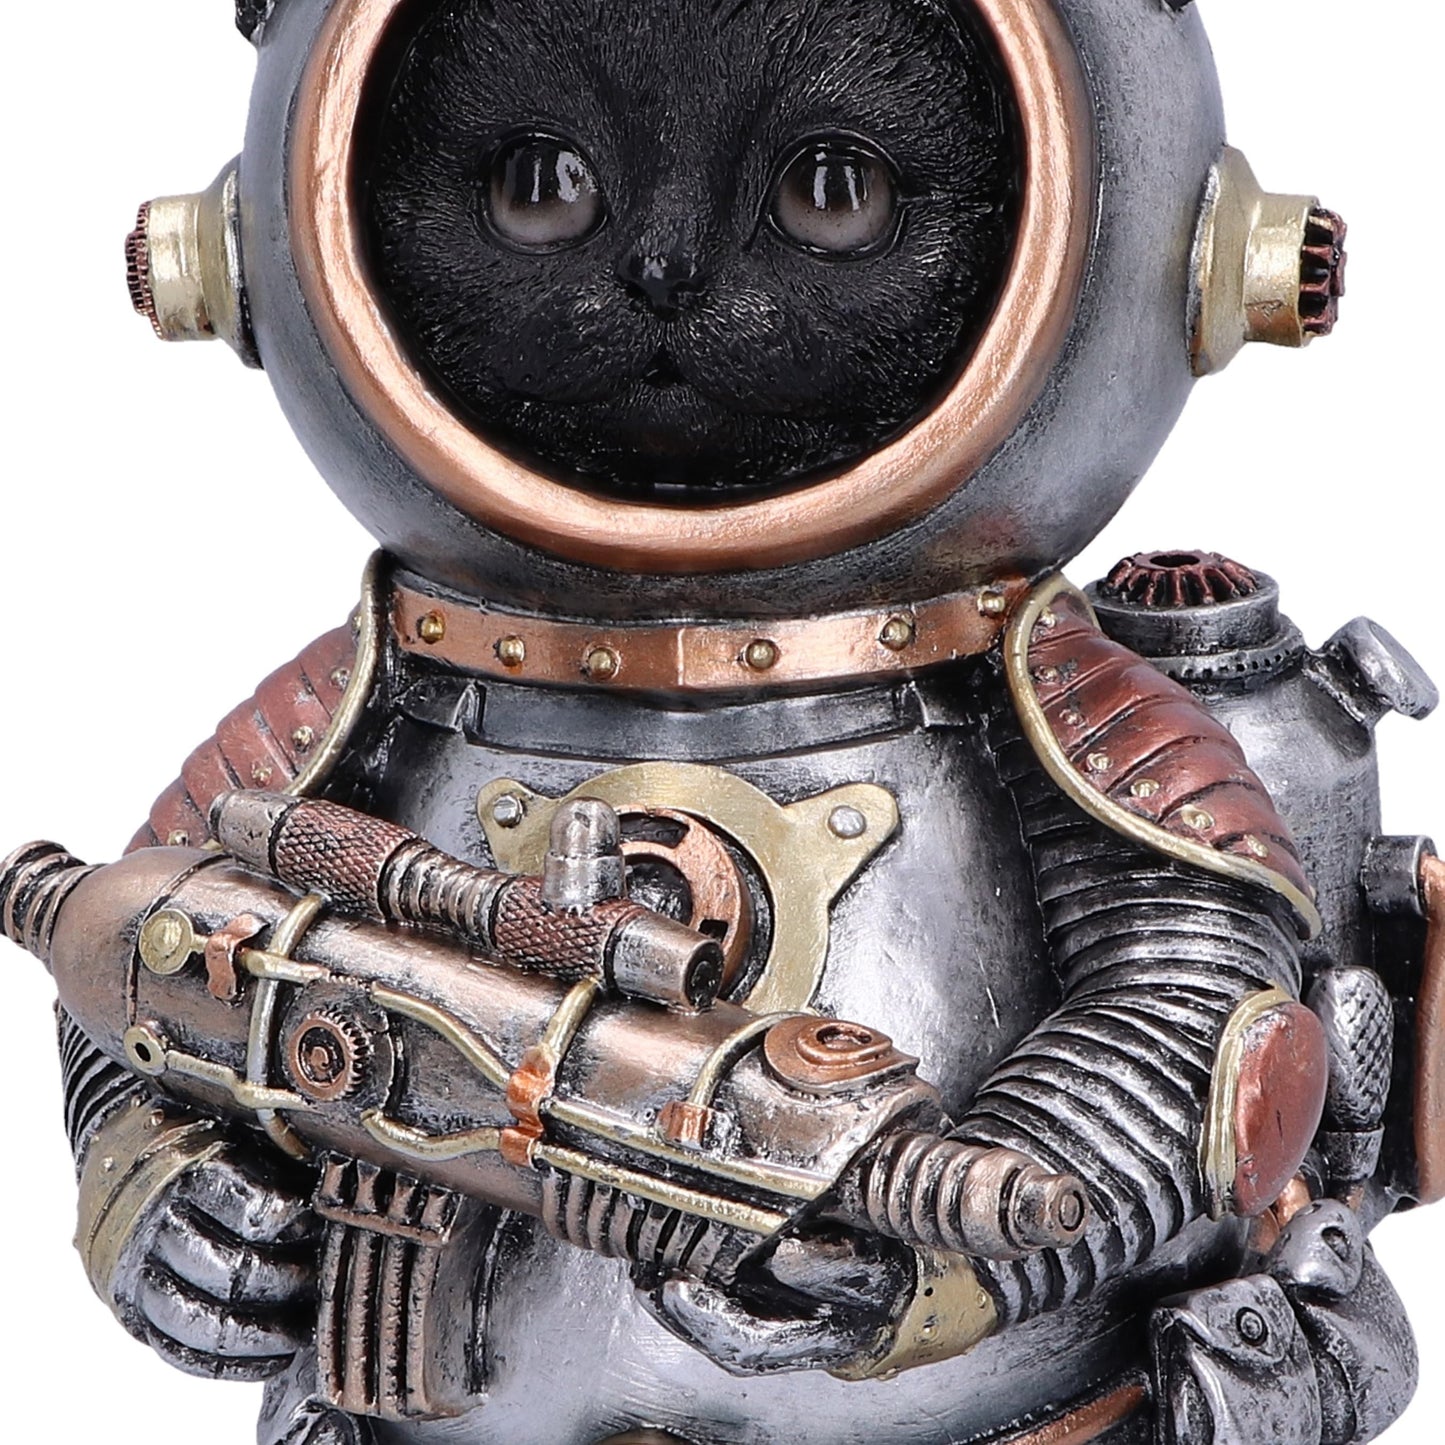 Cat-tack Space Steampunk Figurine